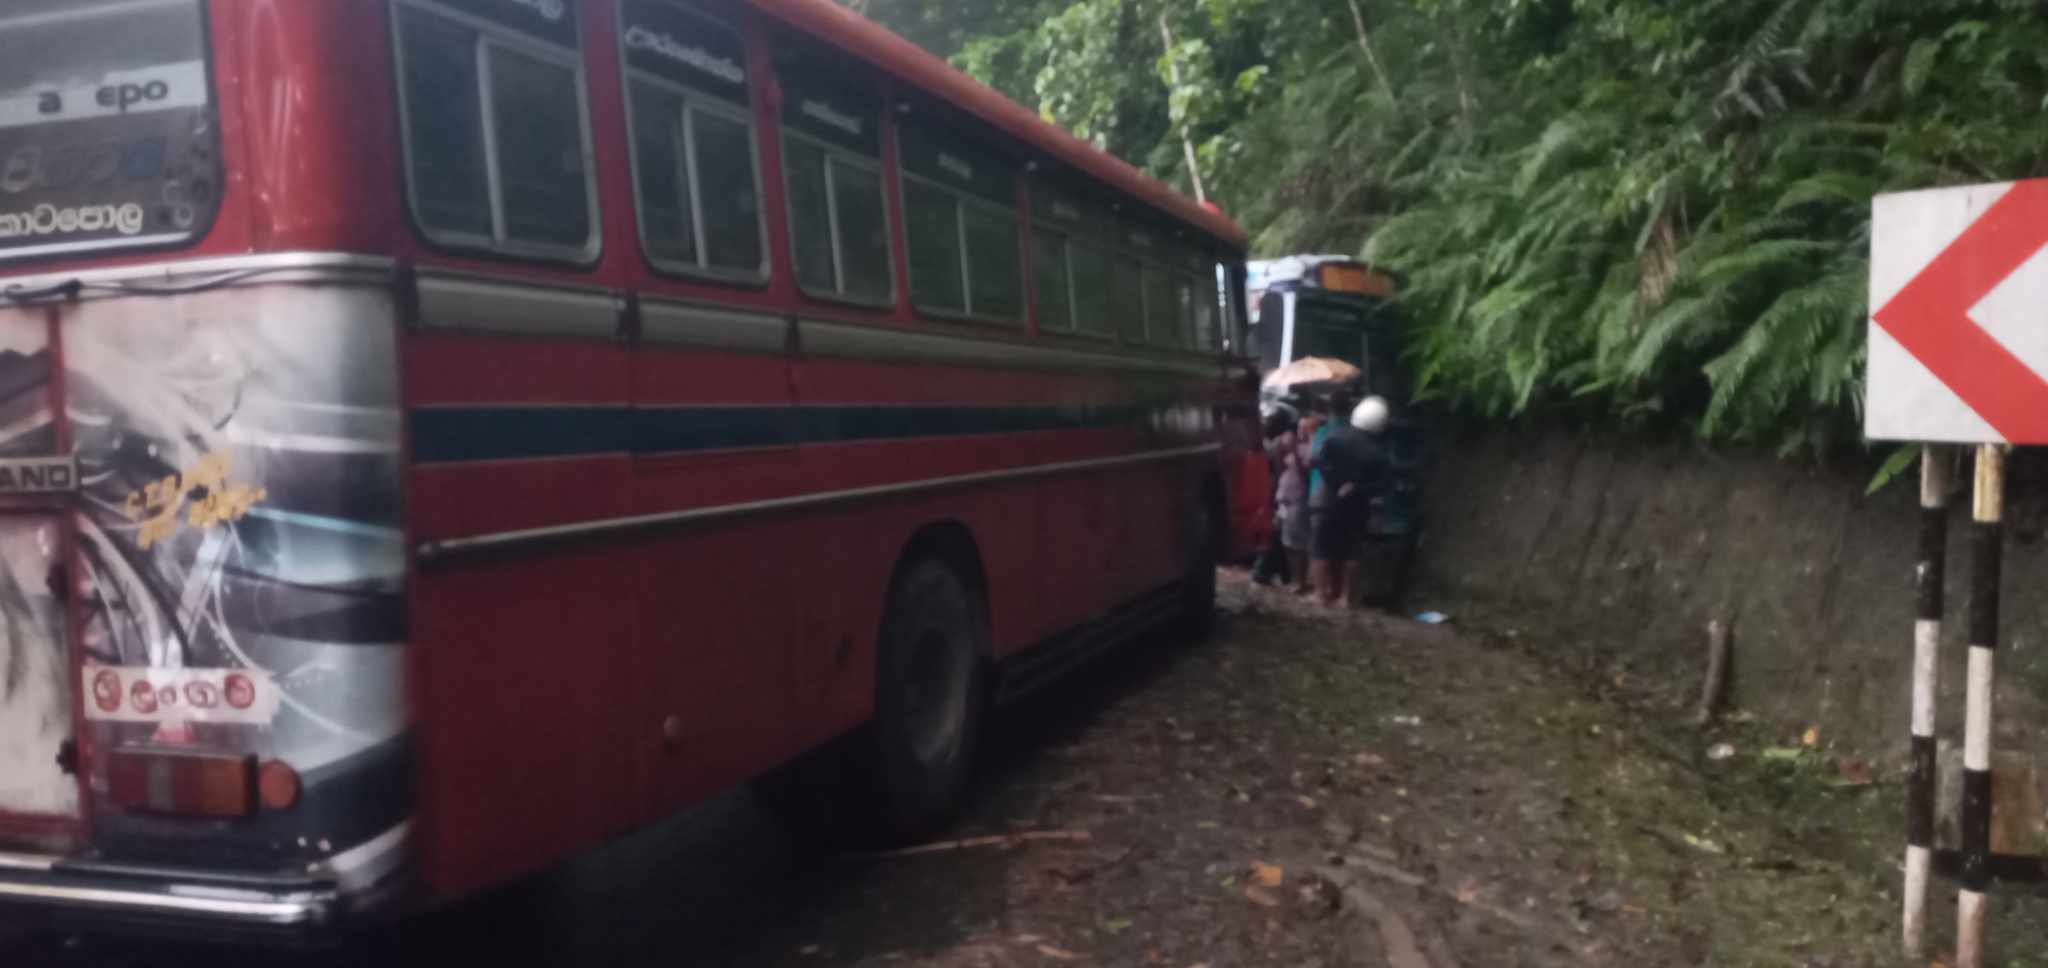 Kotapola Bus Accident13